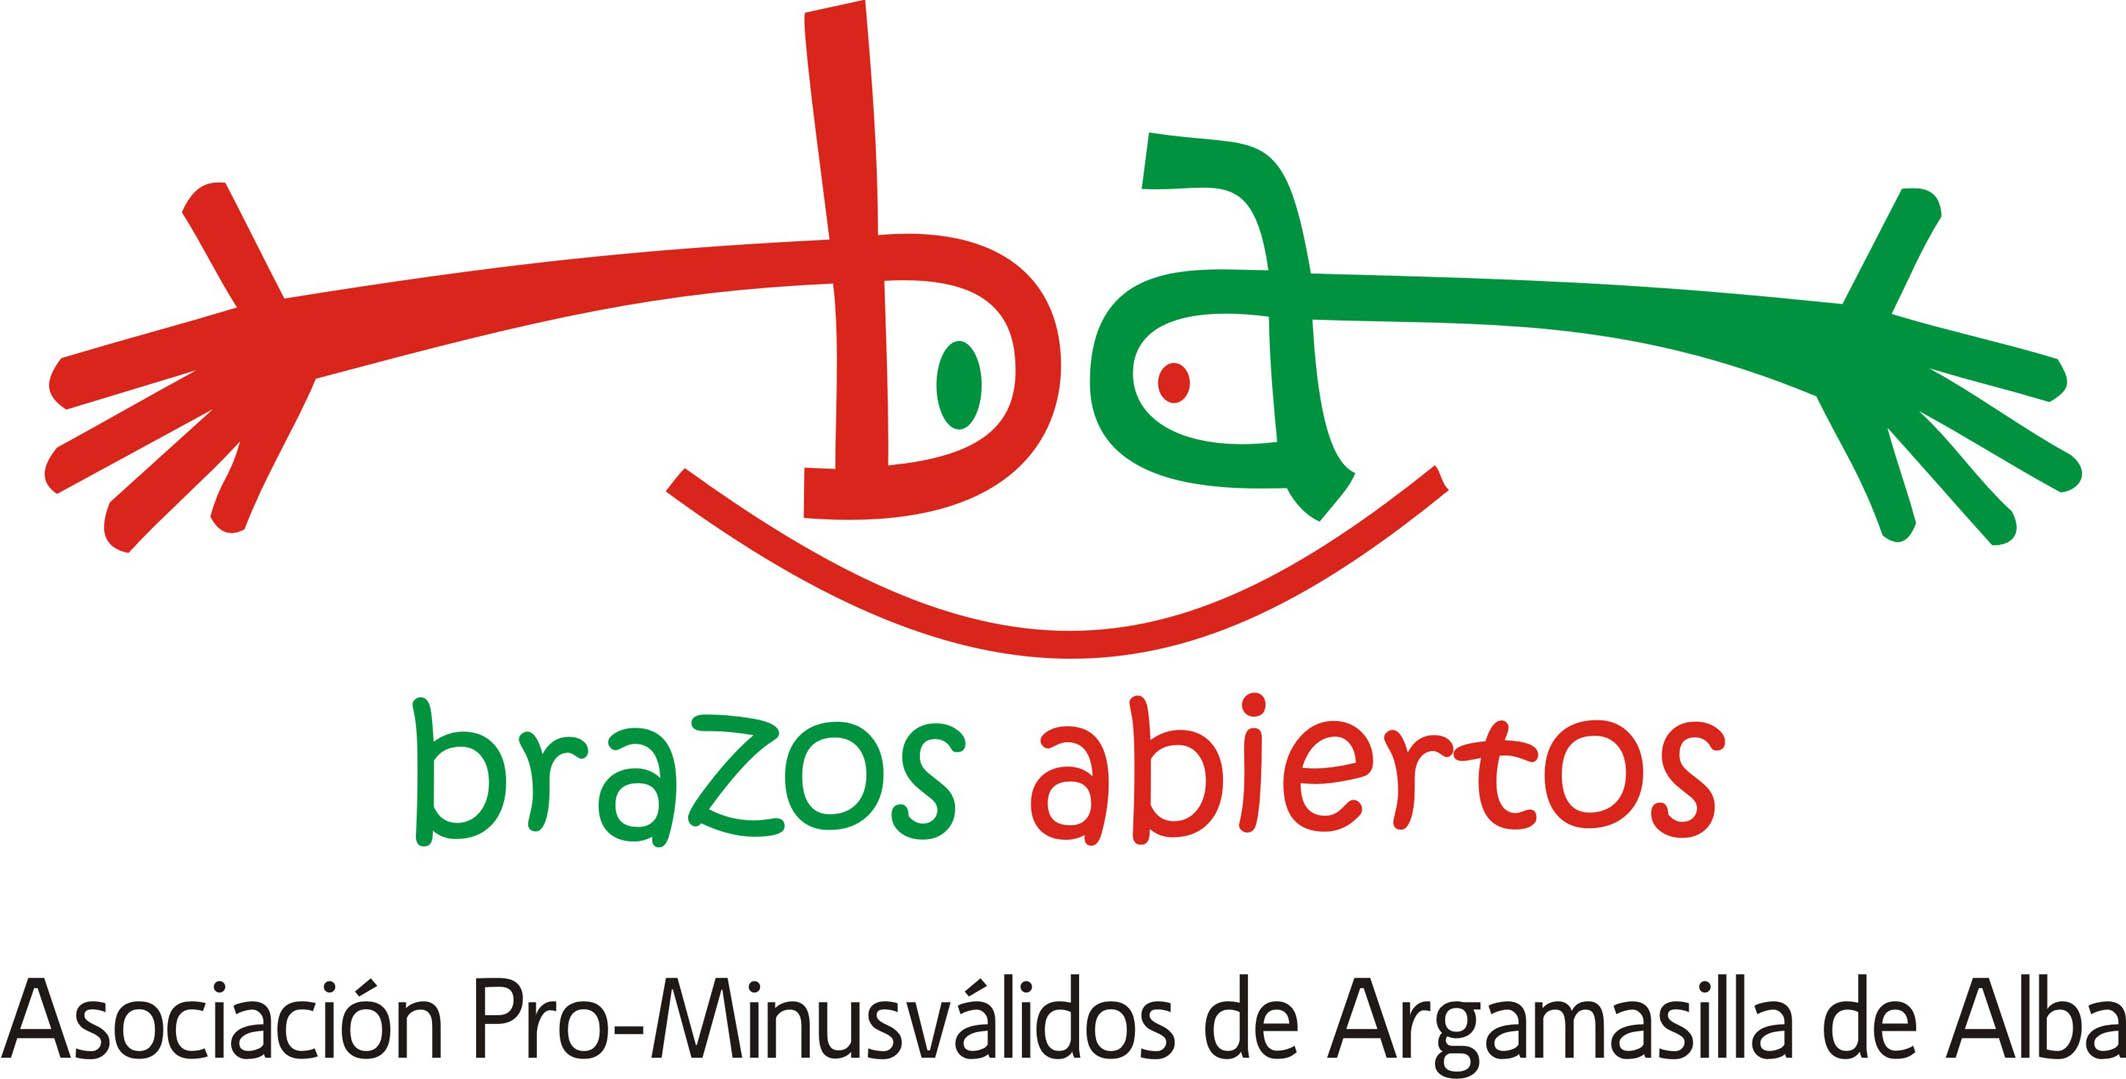 Brazos Logo - La Asociación Pro Minusválidos 'Brazos Abiertos' Tiene Nueva Imagen